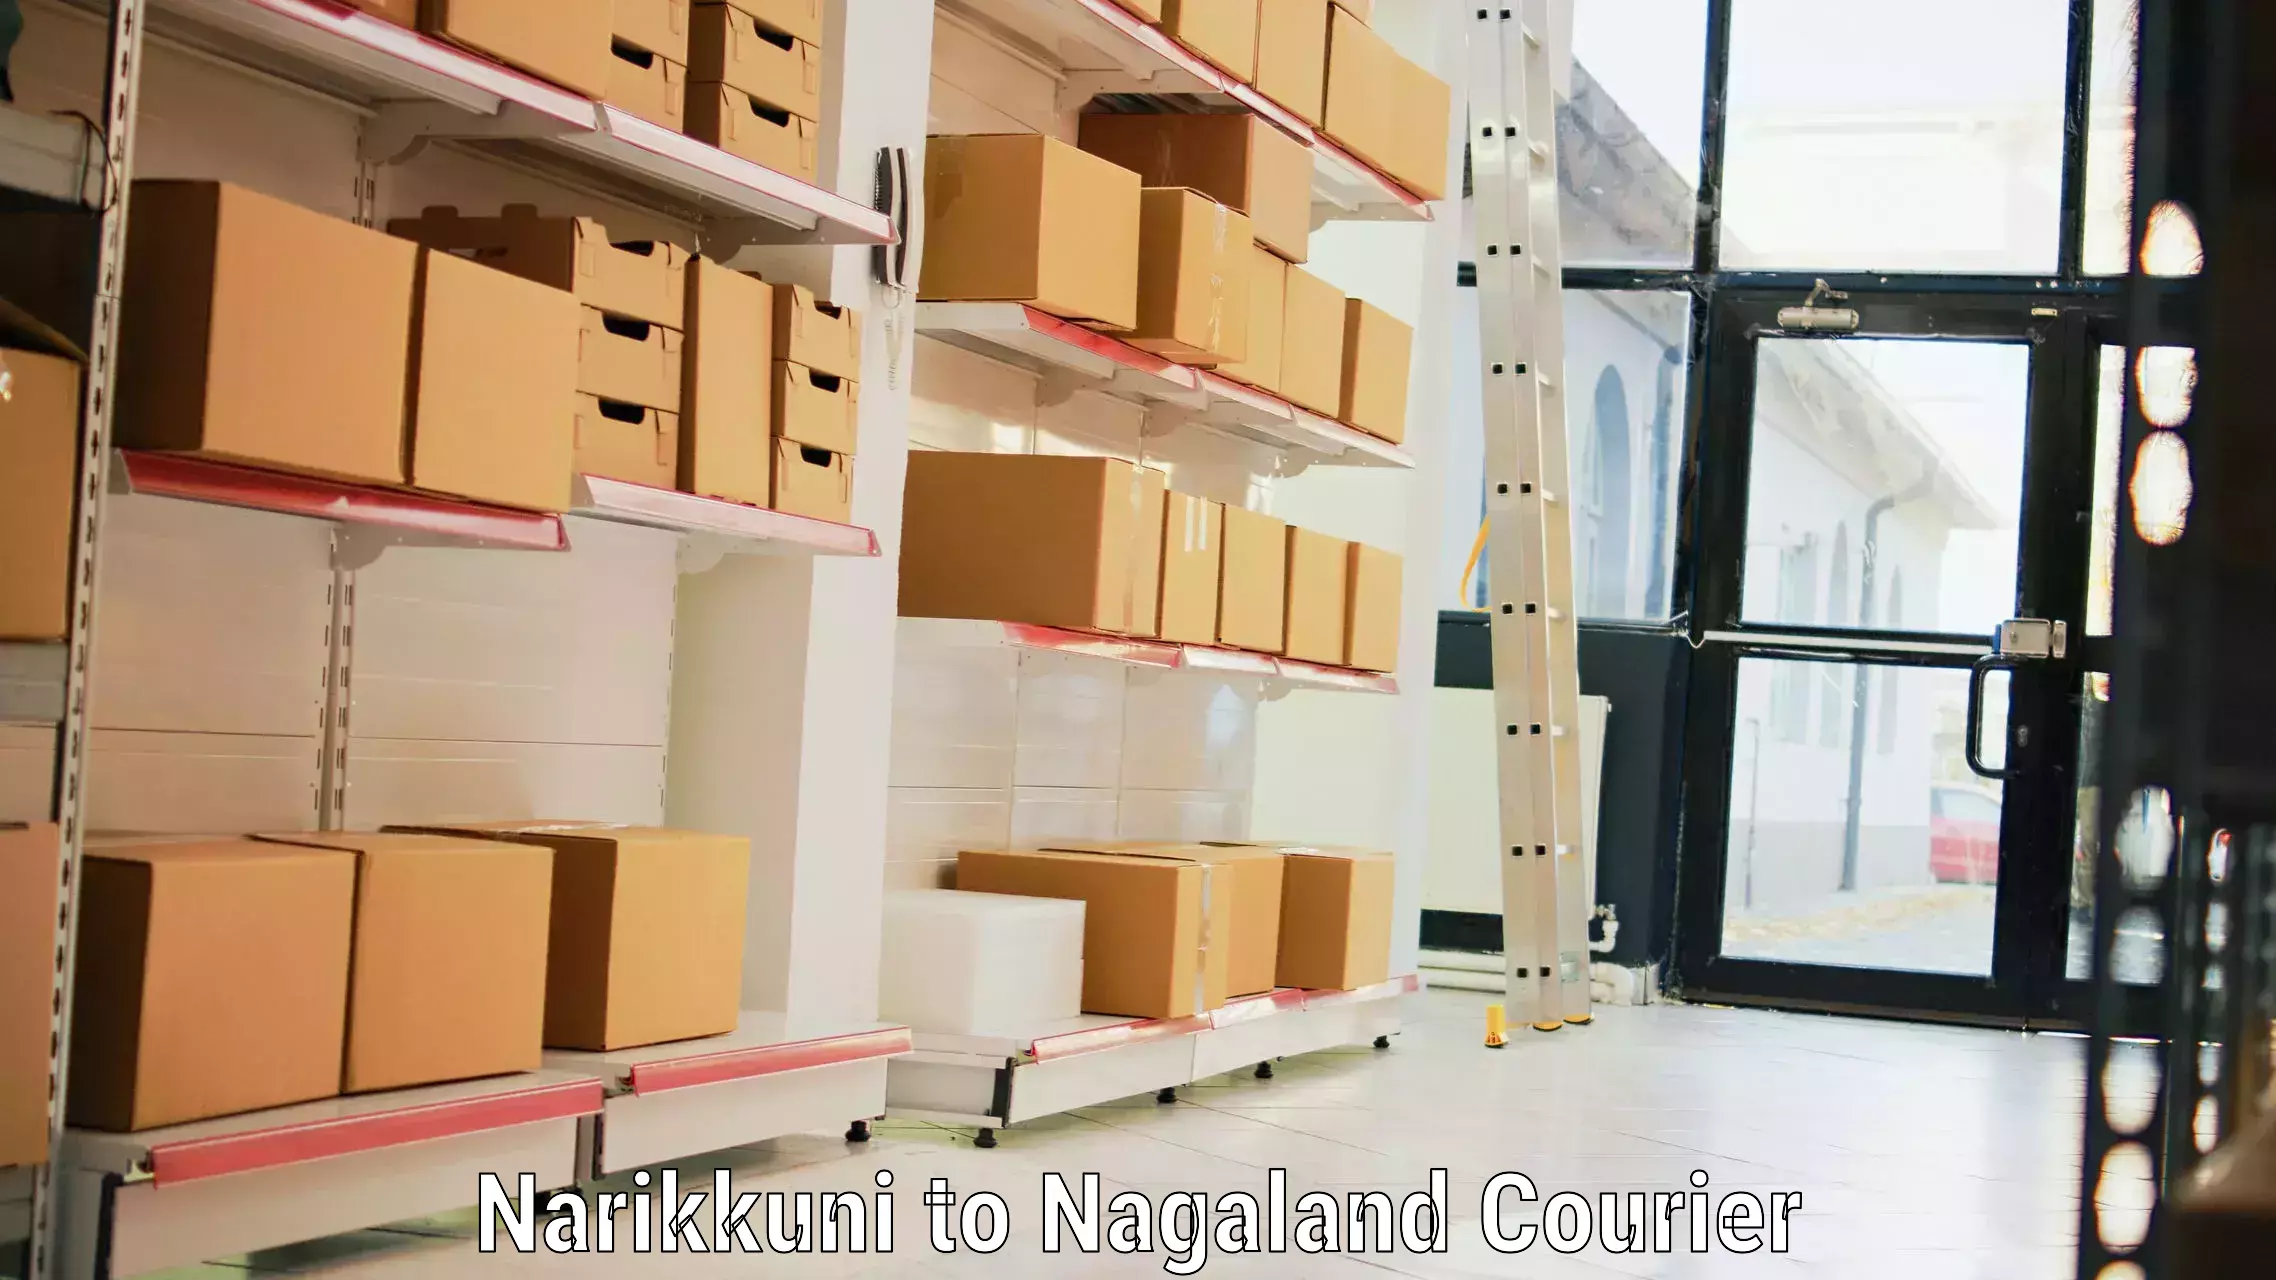 Baggage shipping experience in Narikkuni to Nagaland